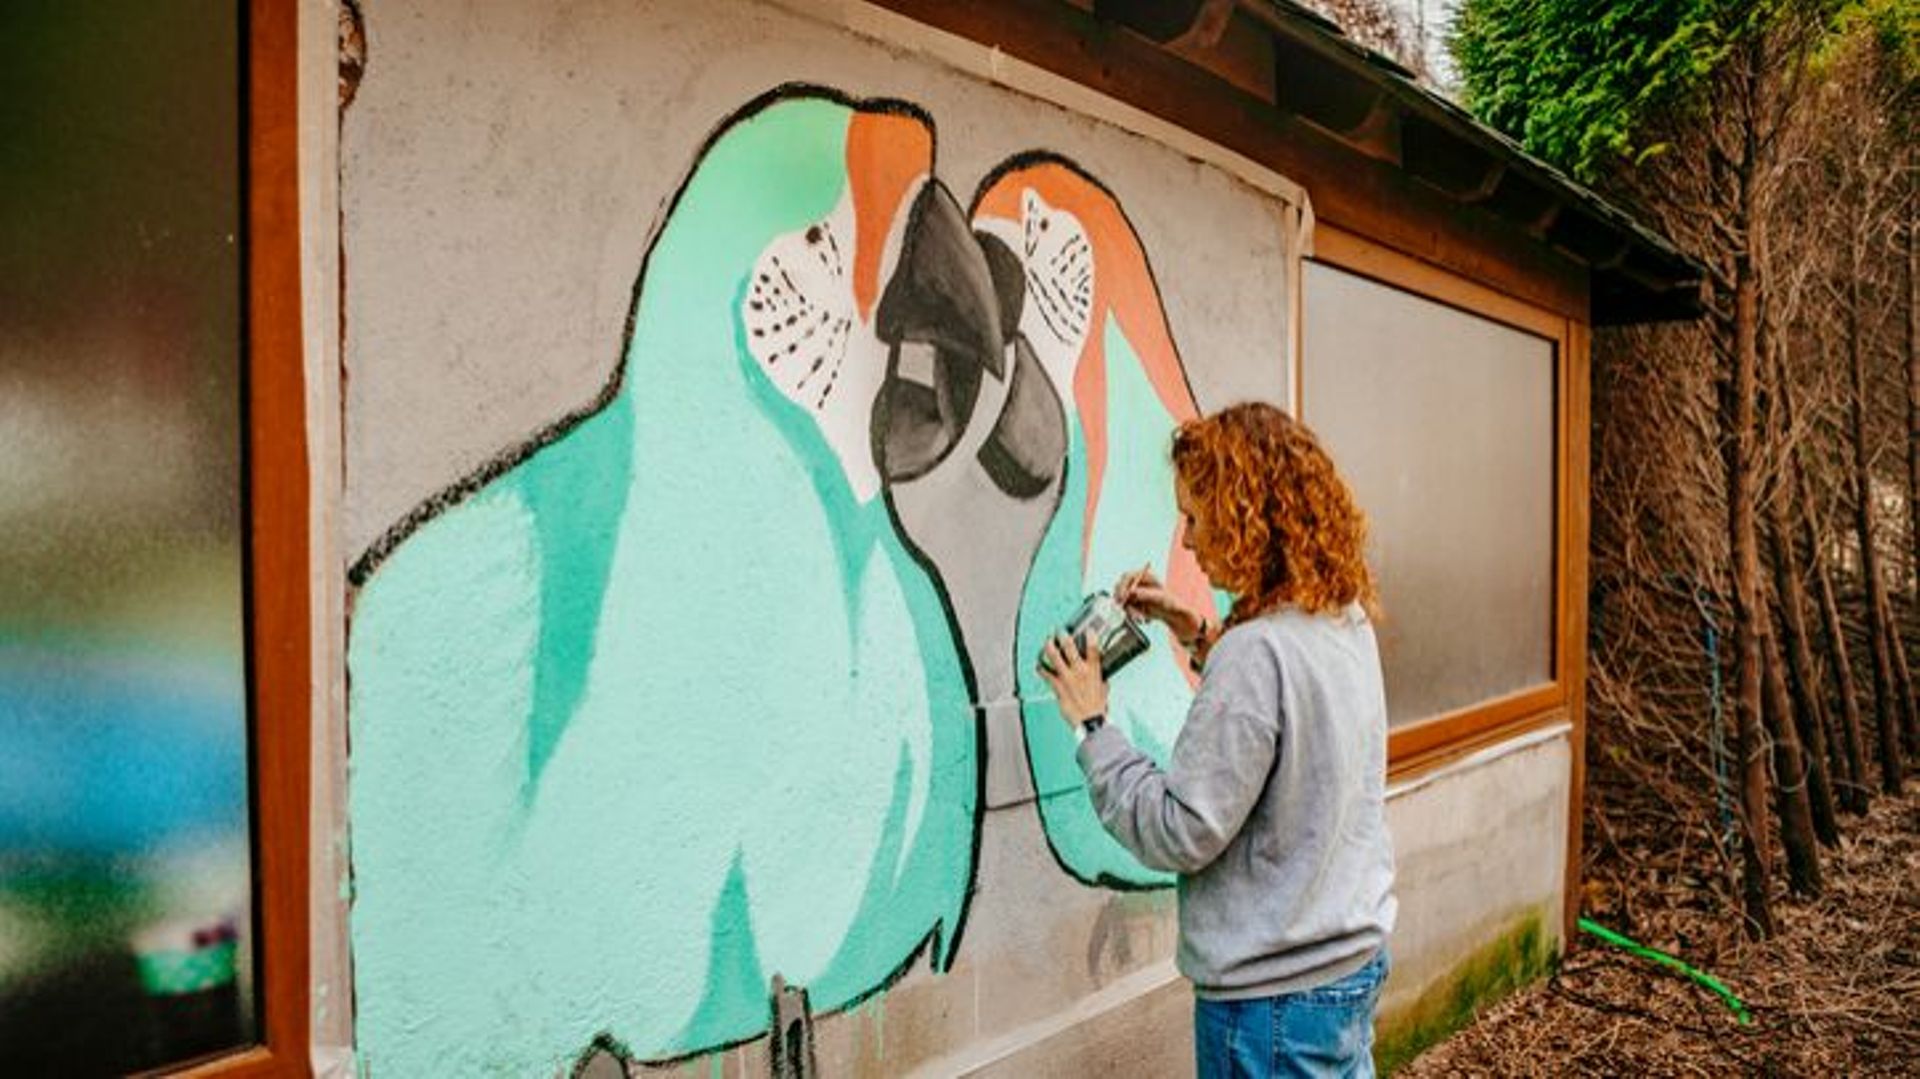 Une balade pour découvrir Liège à travers le Street art